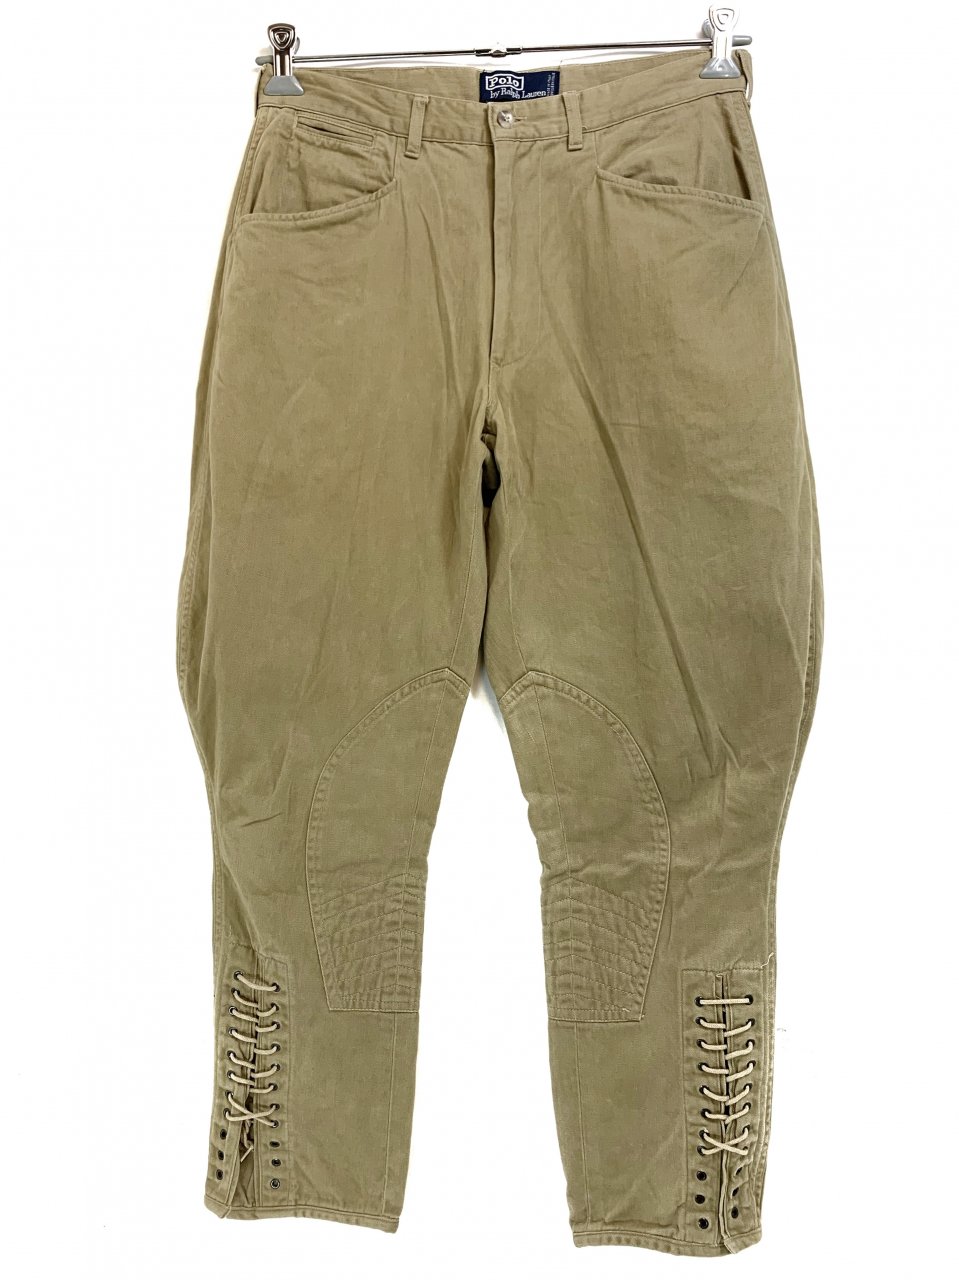 イタリア製 90s Polo Ralph Lauren US ARMY Type Jodhpurs Pants